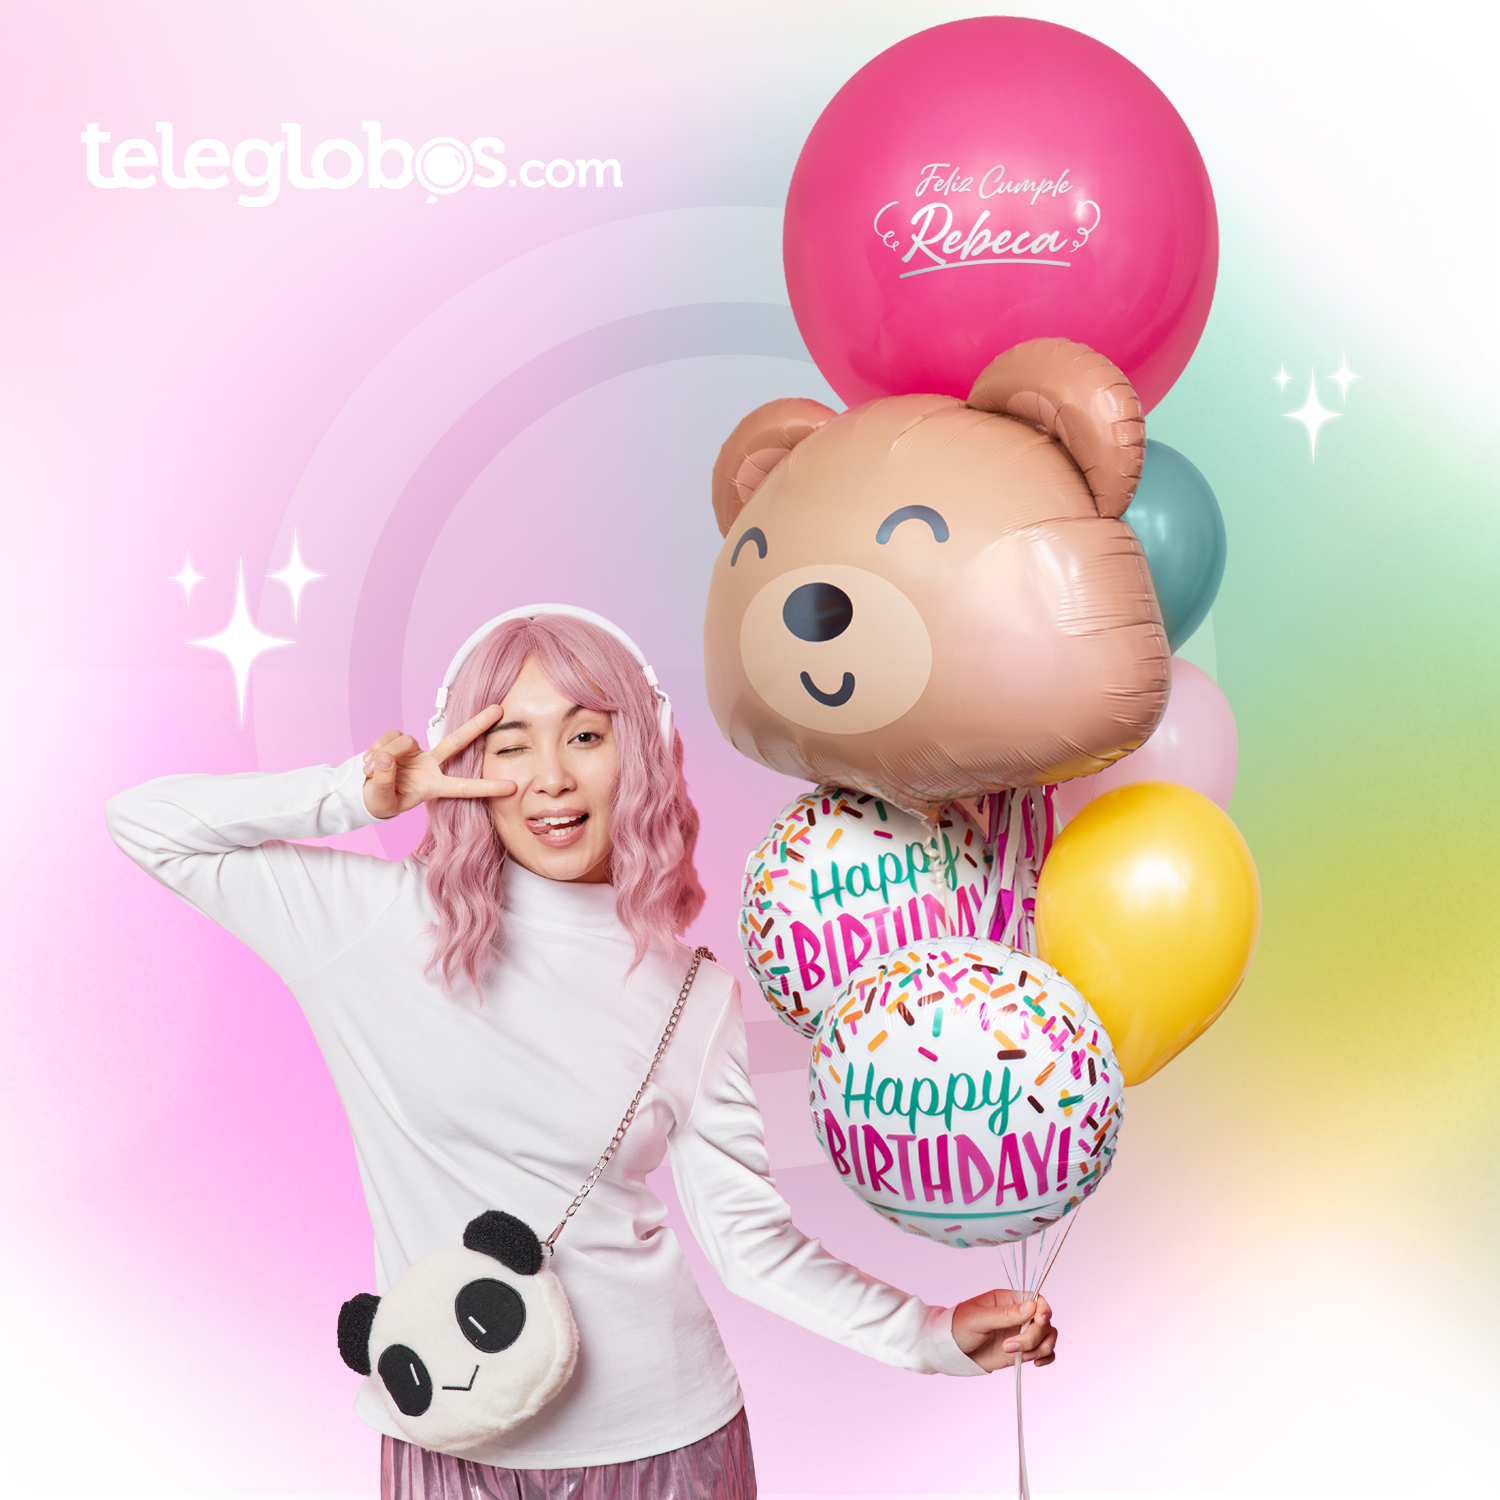 globos de cumpleaños para niñas tienda de globos a domicilio cdmx Teleglobos